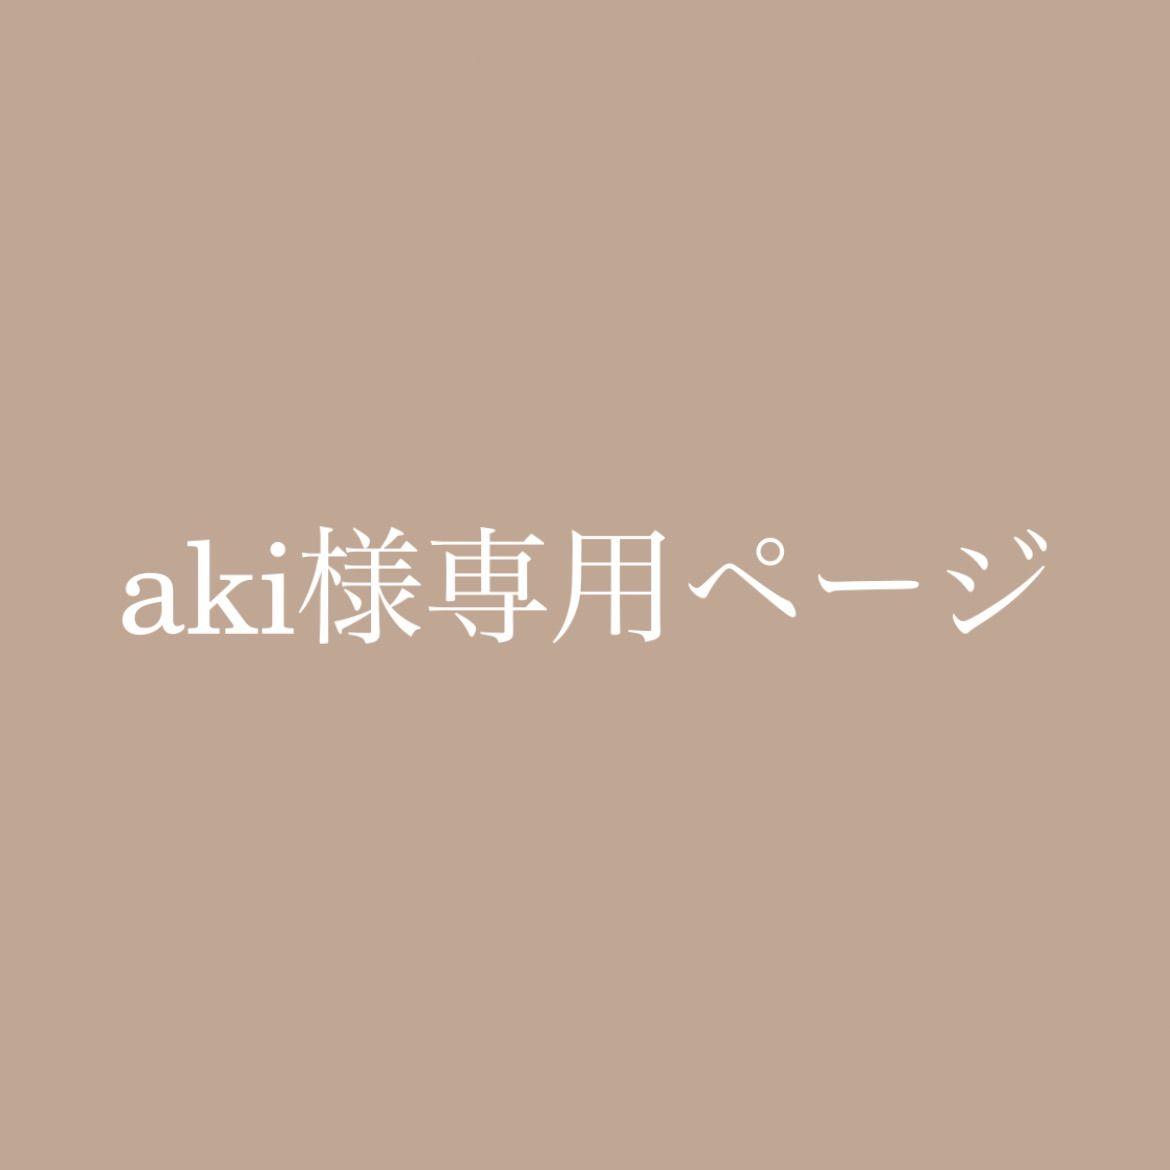 akki讒伜ｰら畑 - 1